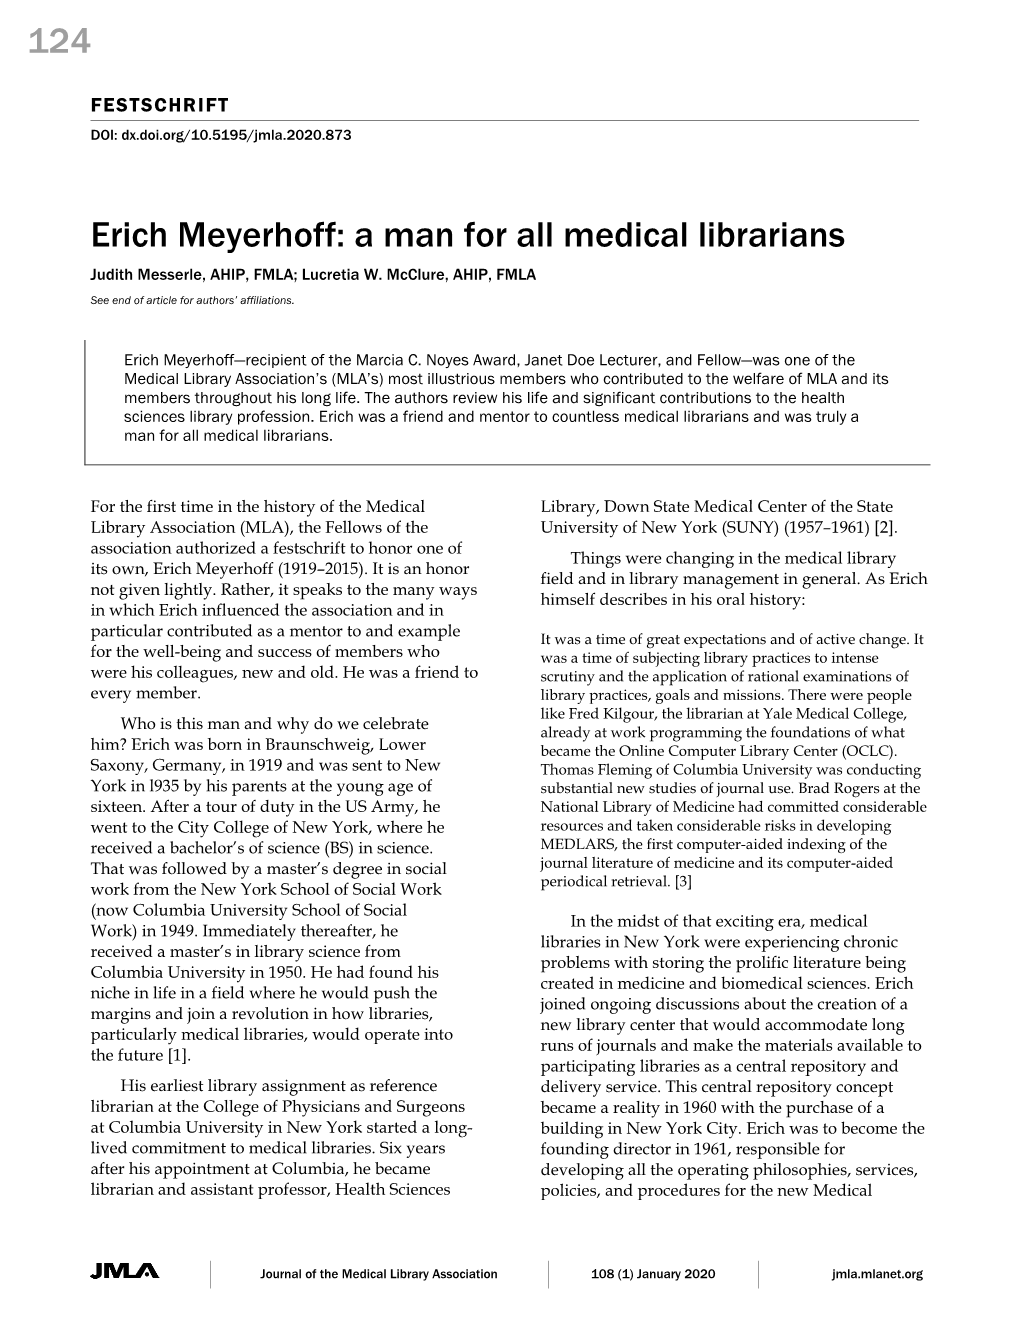 124 Erich Meyerhoff: a Man for All Medical Librarians